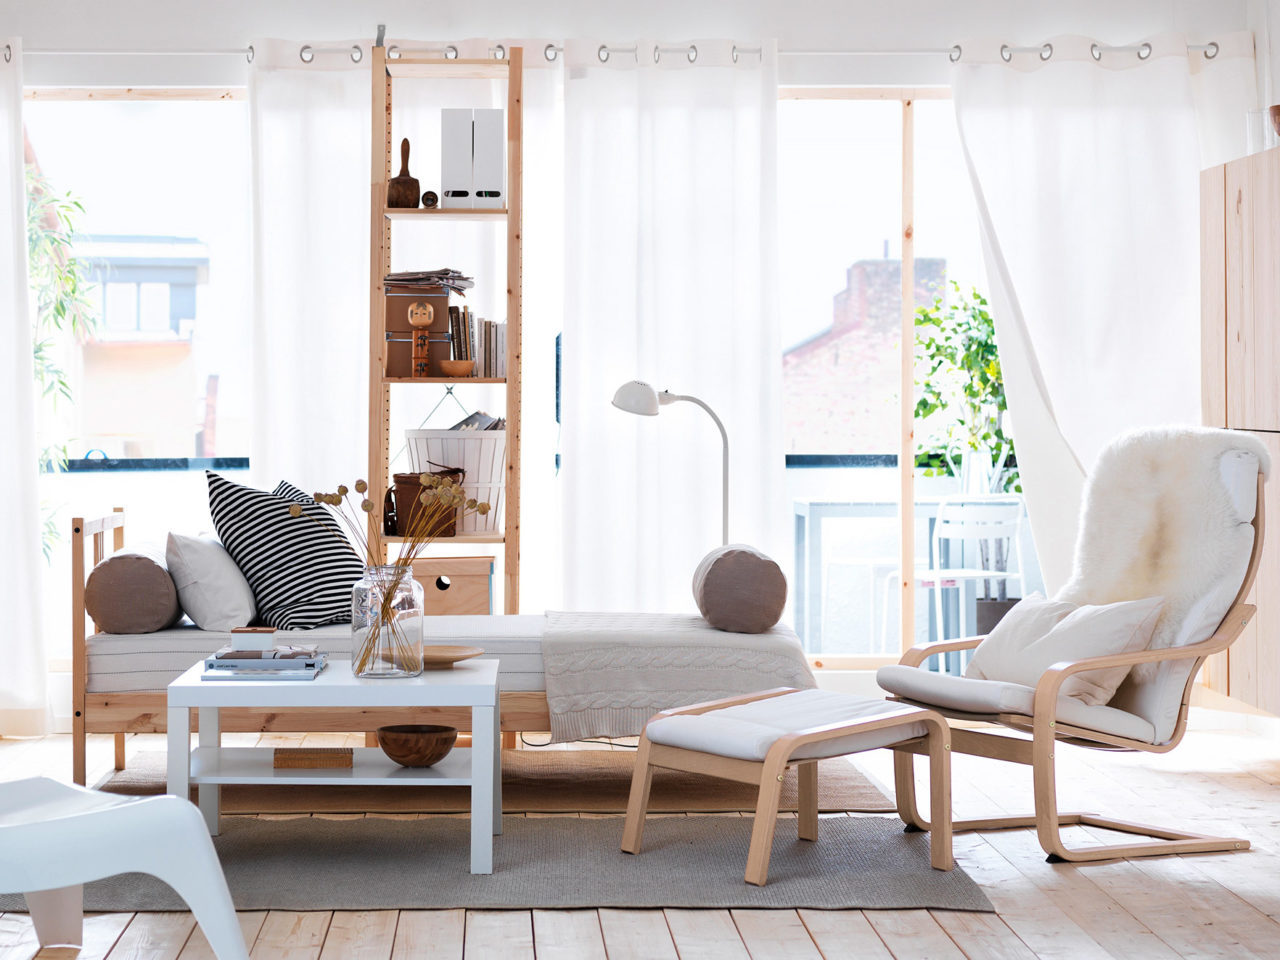 Heller Raum mit Dachfenstern und sonnenbeschienenem Boden. Regalelement aus hellem Holz, Sessel mit Hocker, Modell POÄNG.